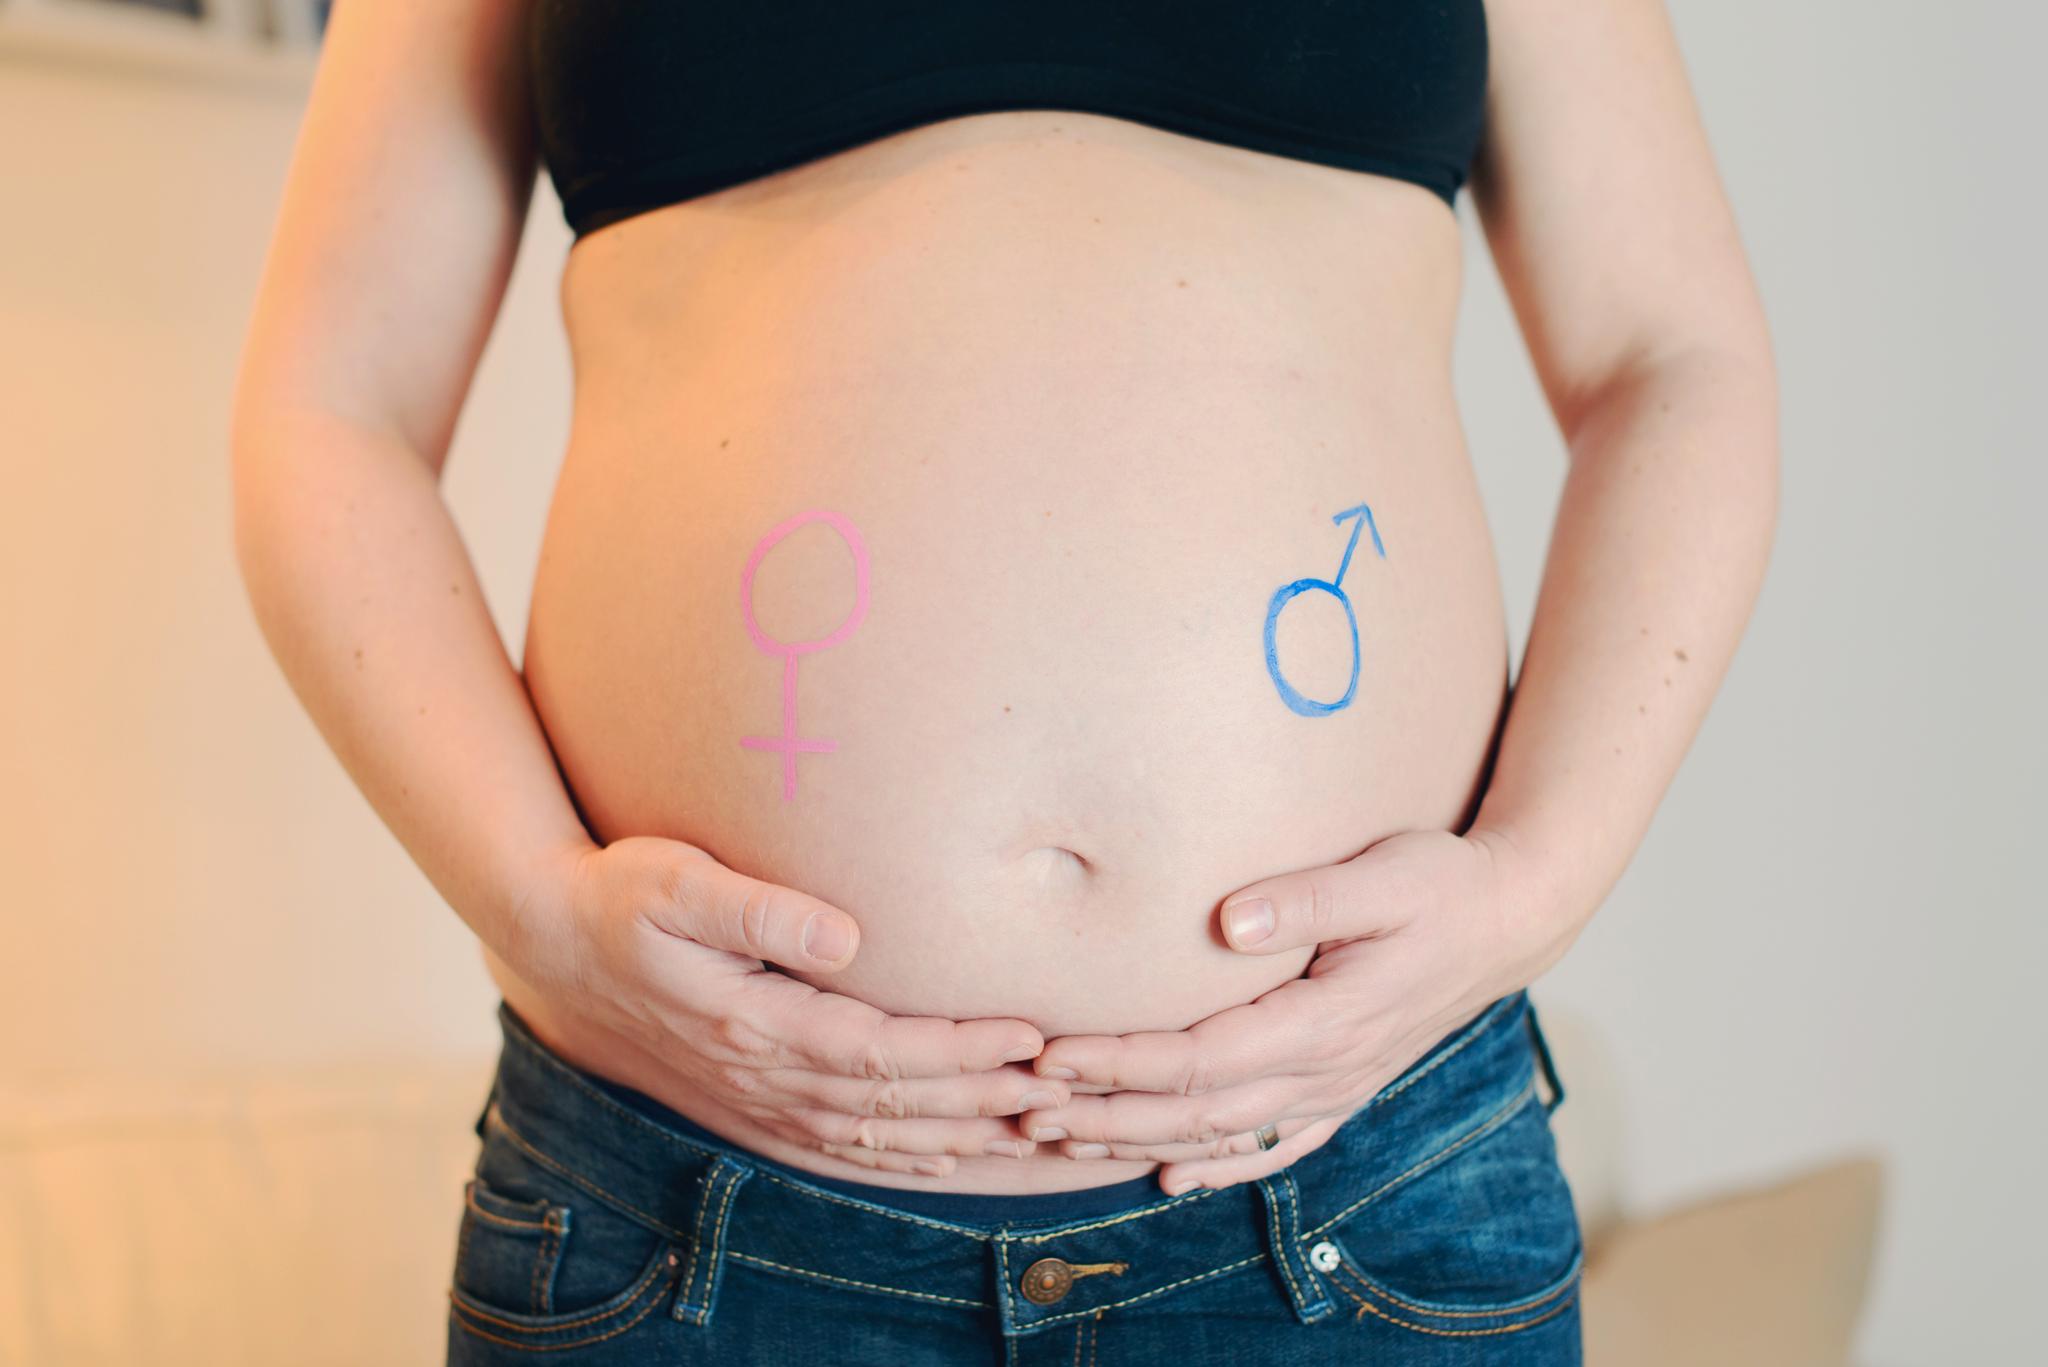 Et trygt tilbud til gravide og fødende er faktisk av de helsetiltak som sparer flest leveår, skriver innleggsforfatteren.